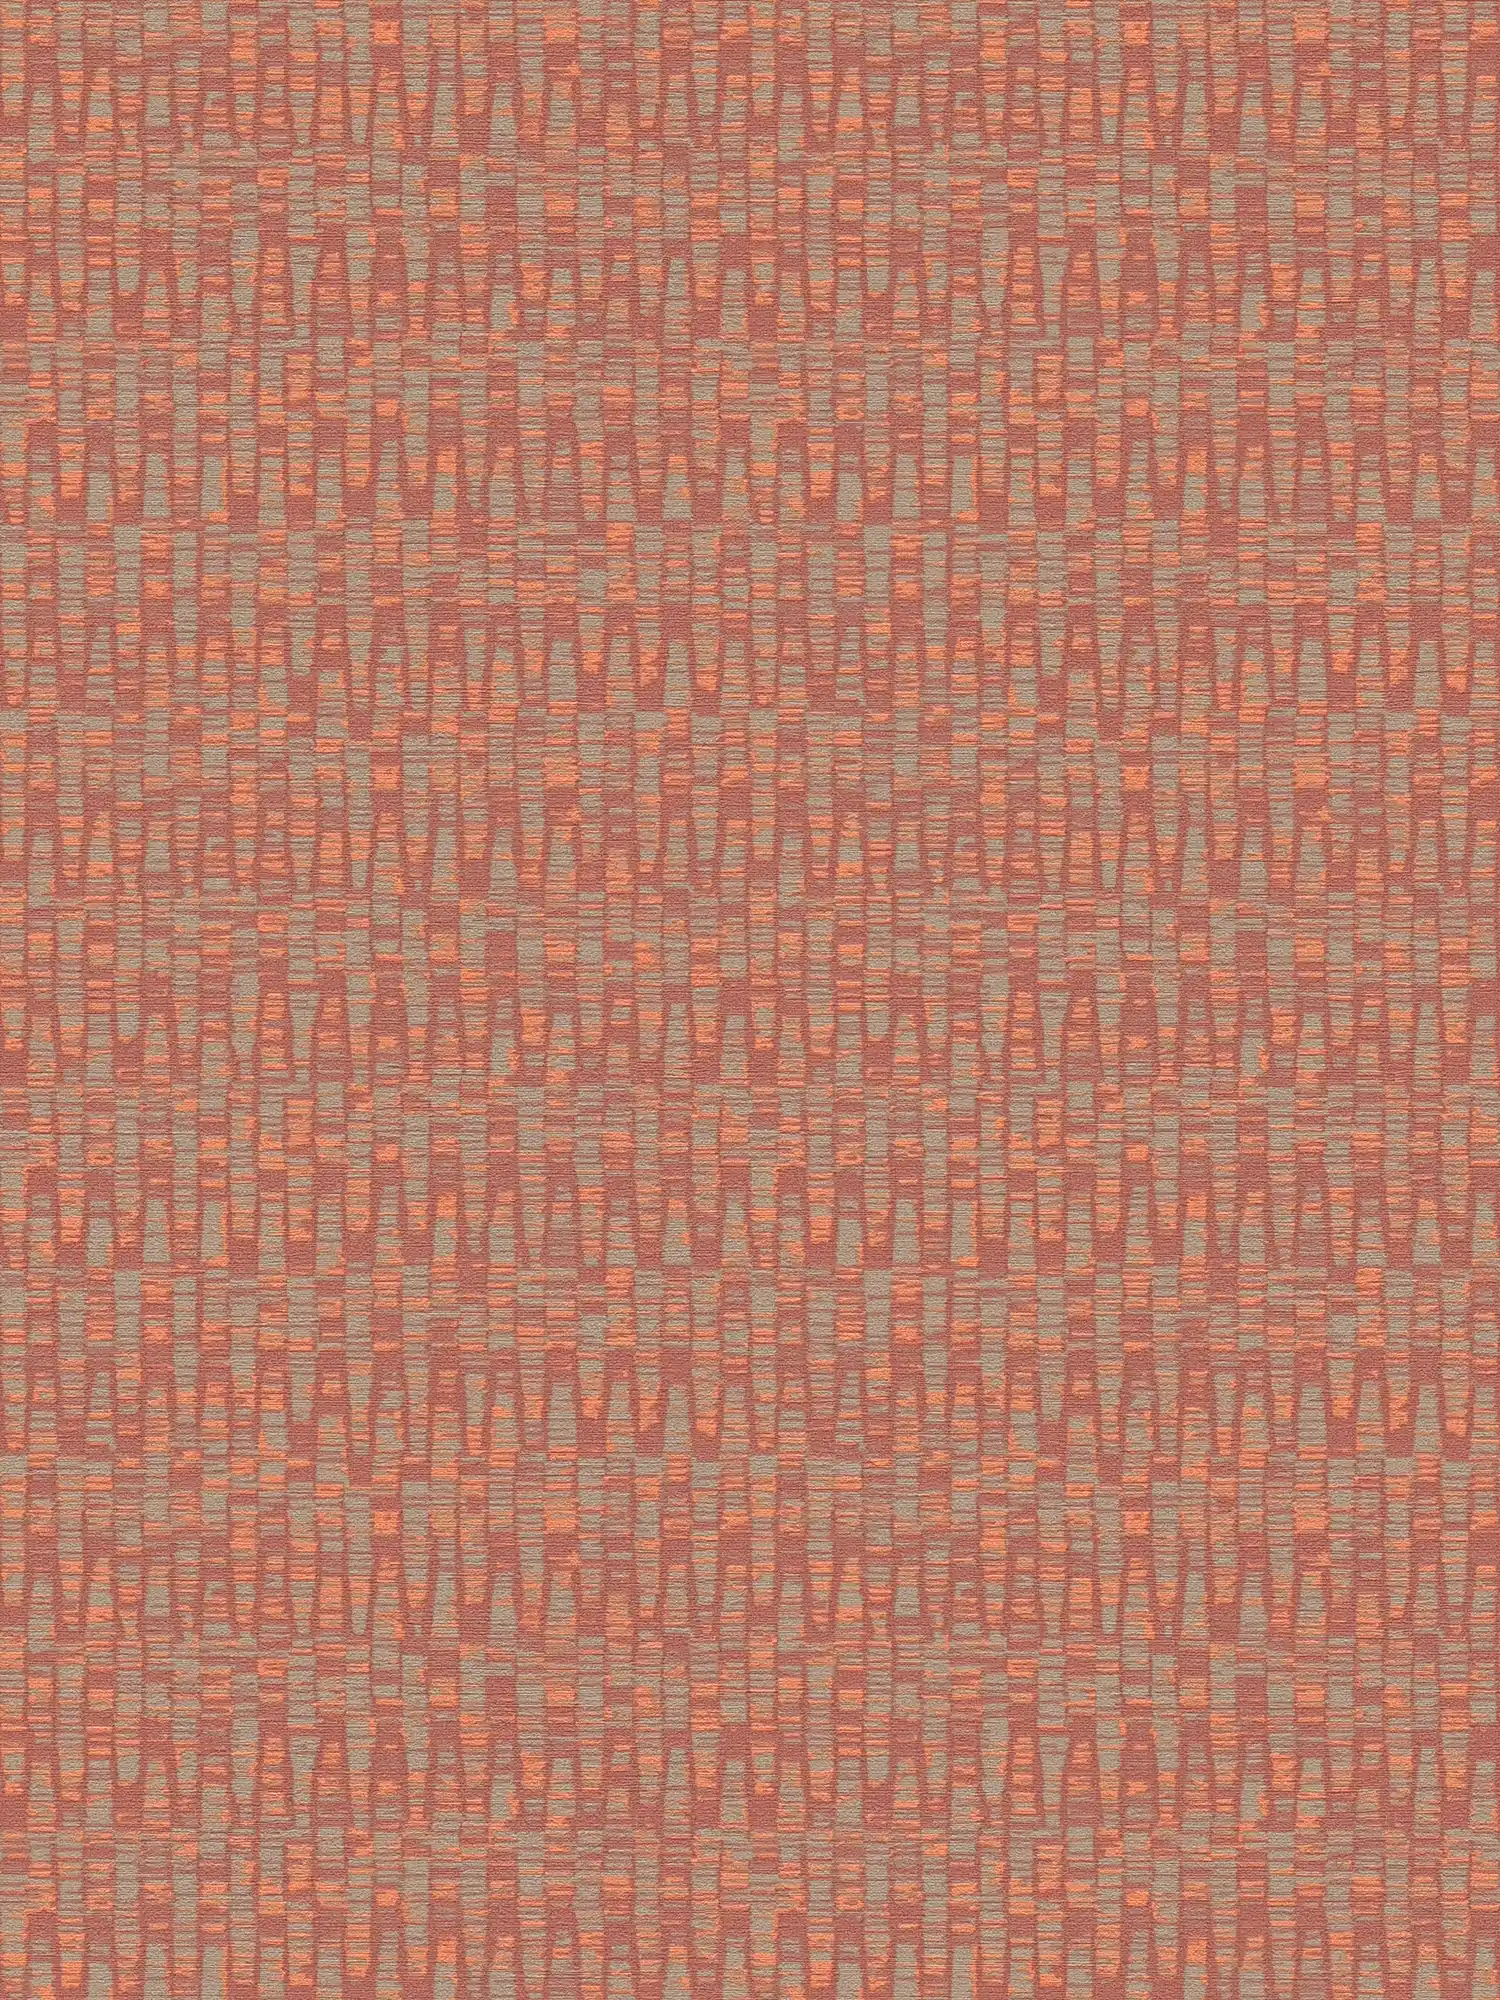 Carta da parati in tessuto non tessuto in colori vivaci: rosso, arancione, grigio.
